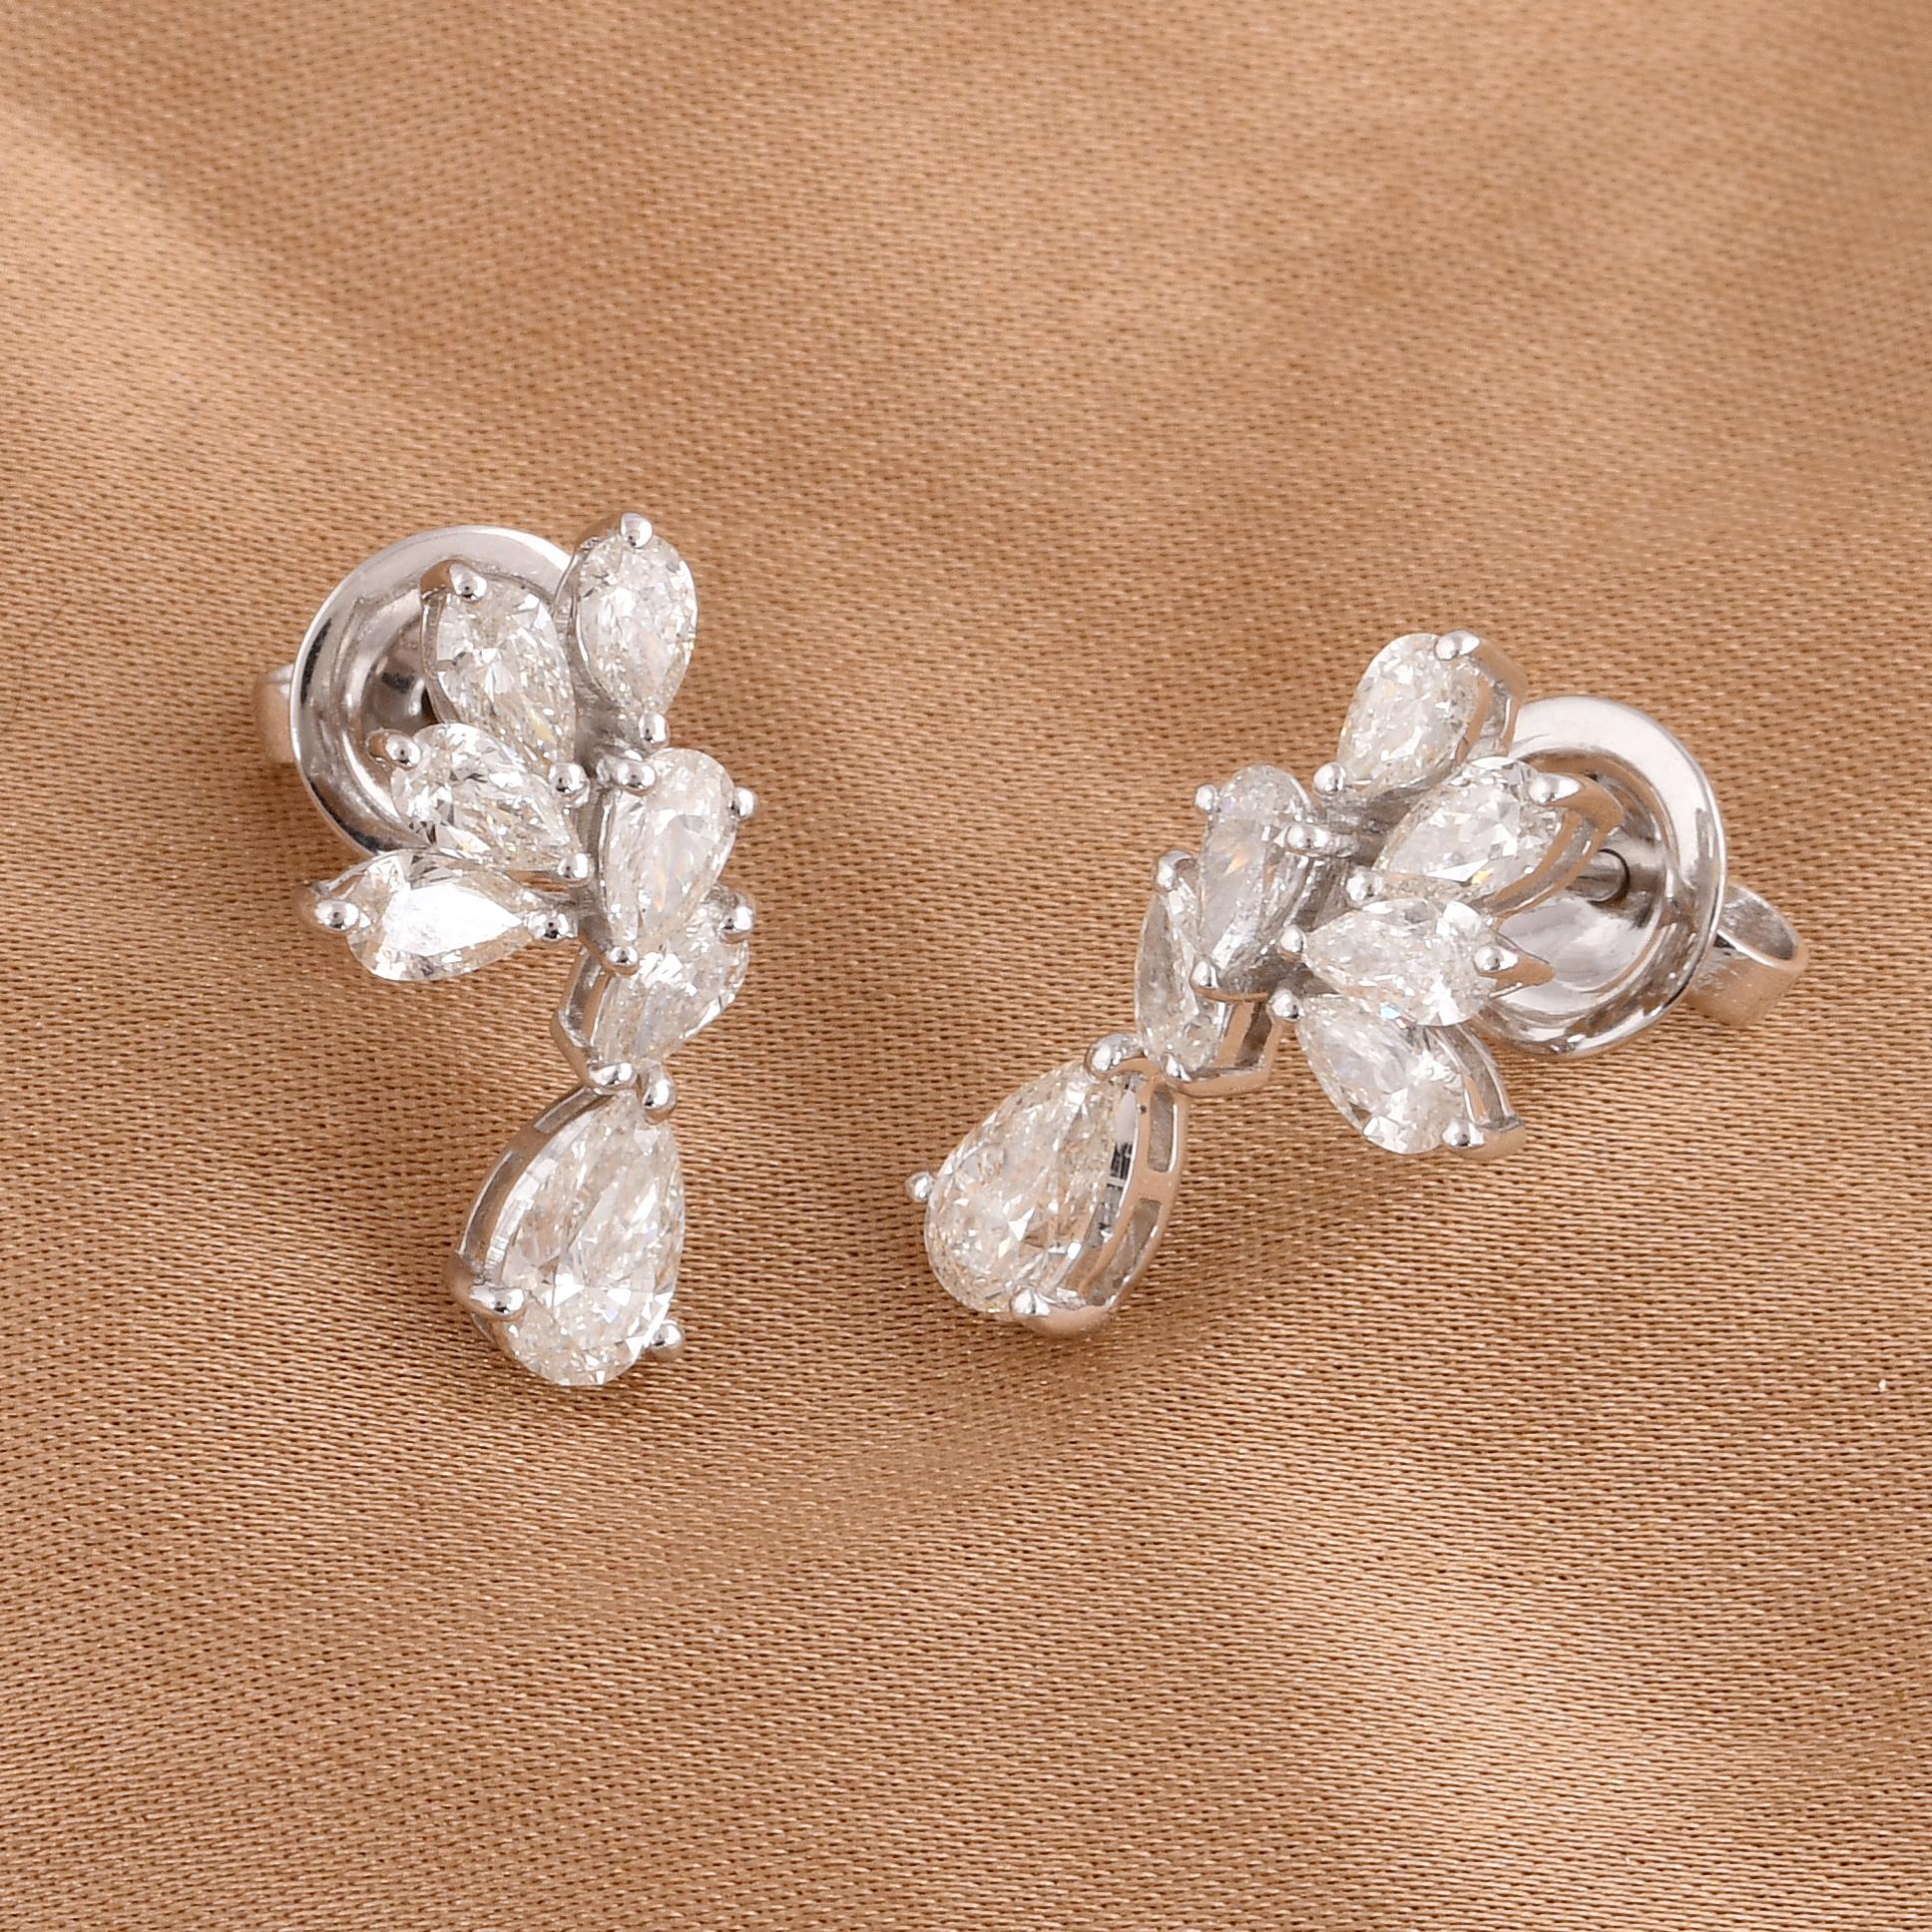 Taille poire 1.82 Carat SI Clarity HI Color Diamond Earrings 18 Karat White Gold Fine Jewelry (Boucles d'oreilles en or blanc 18 carats) en vente